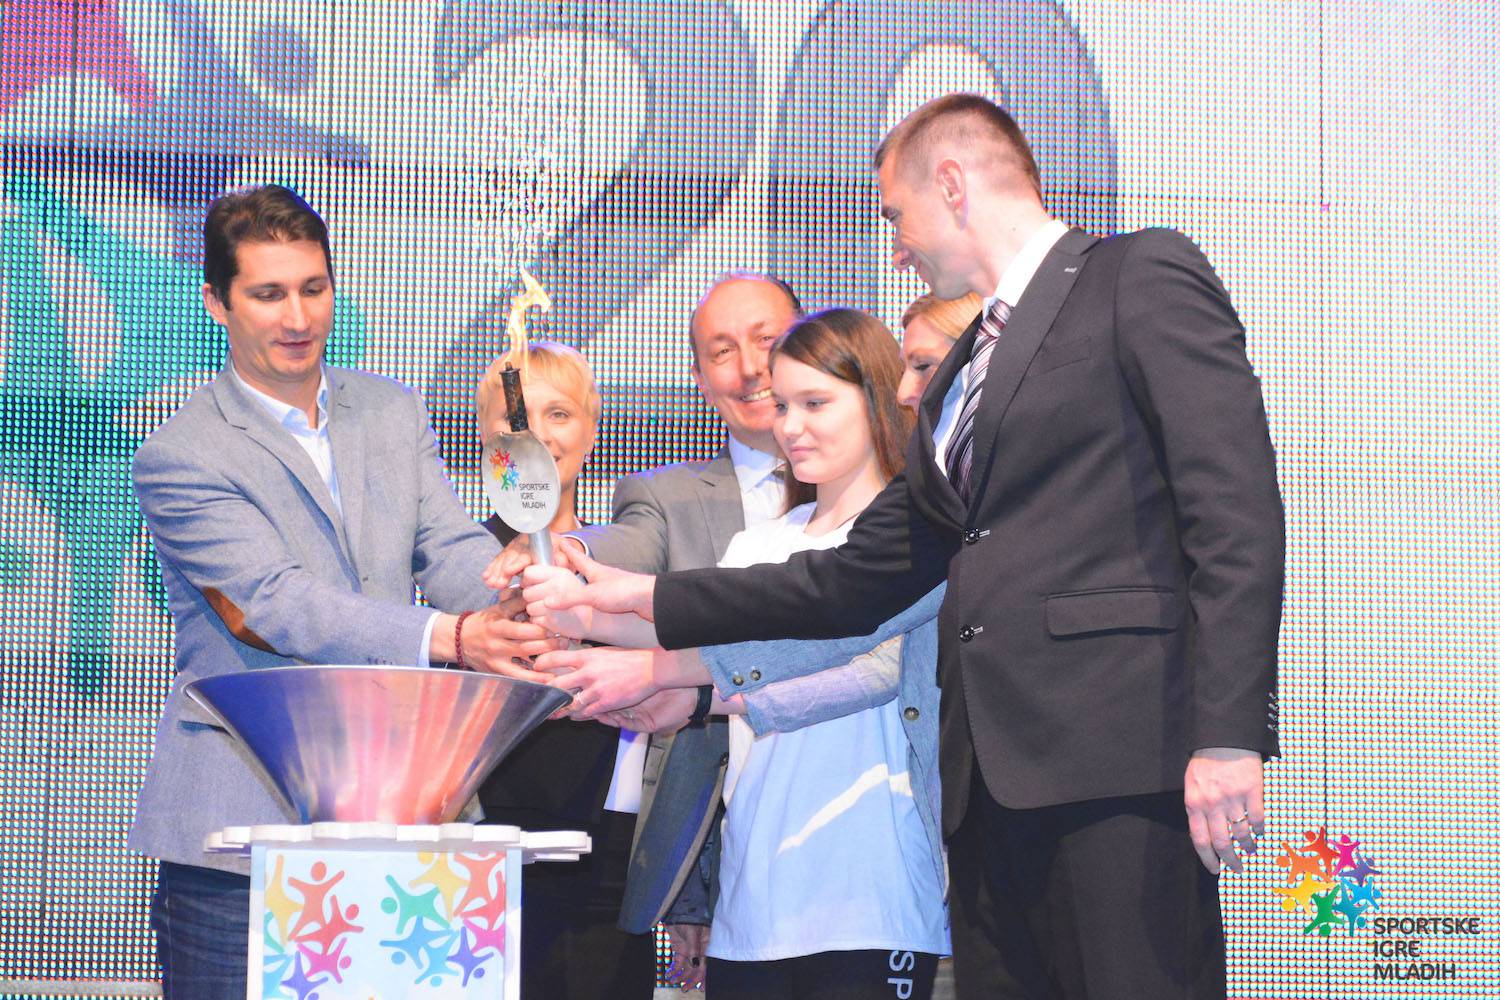 U Vukovaru svečano otvorene 20. Sportske igre mladih